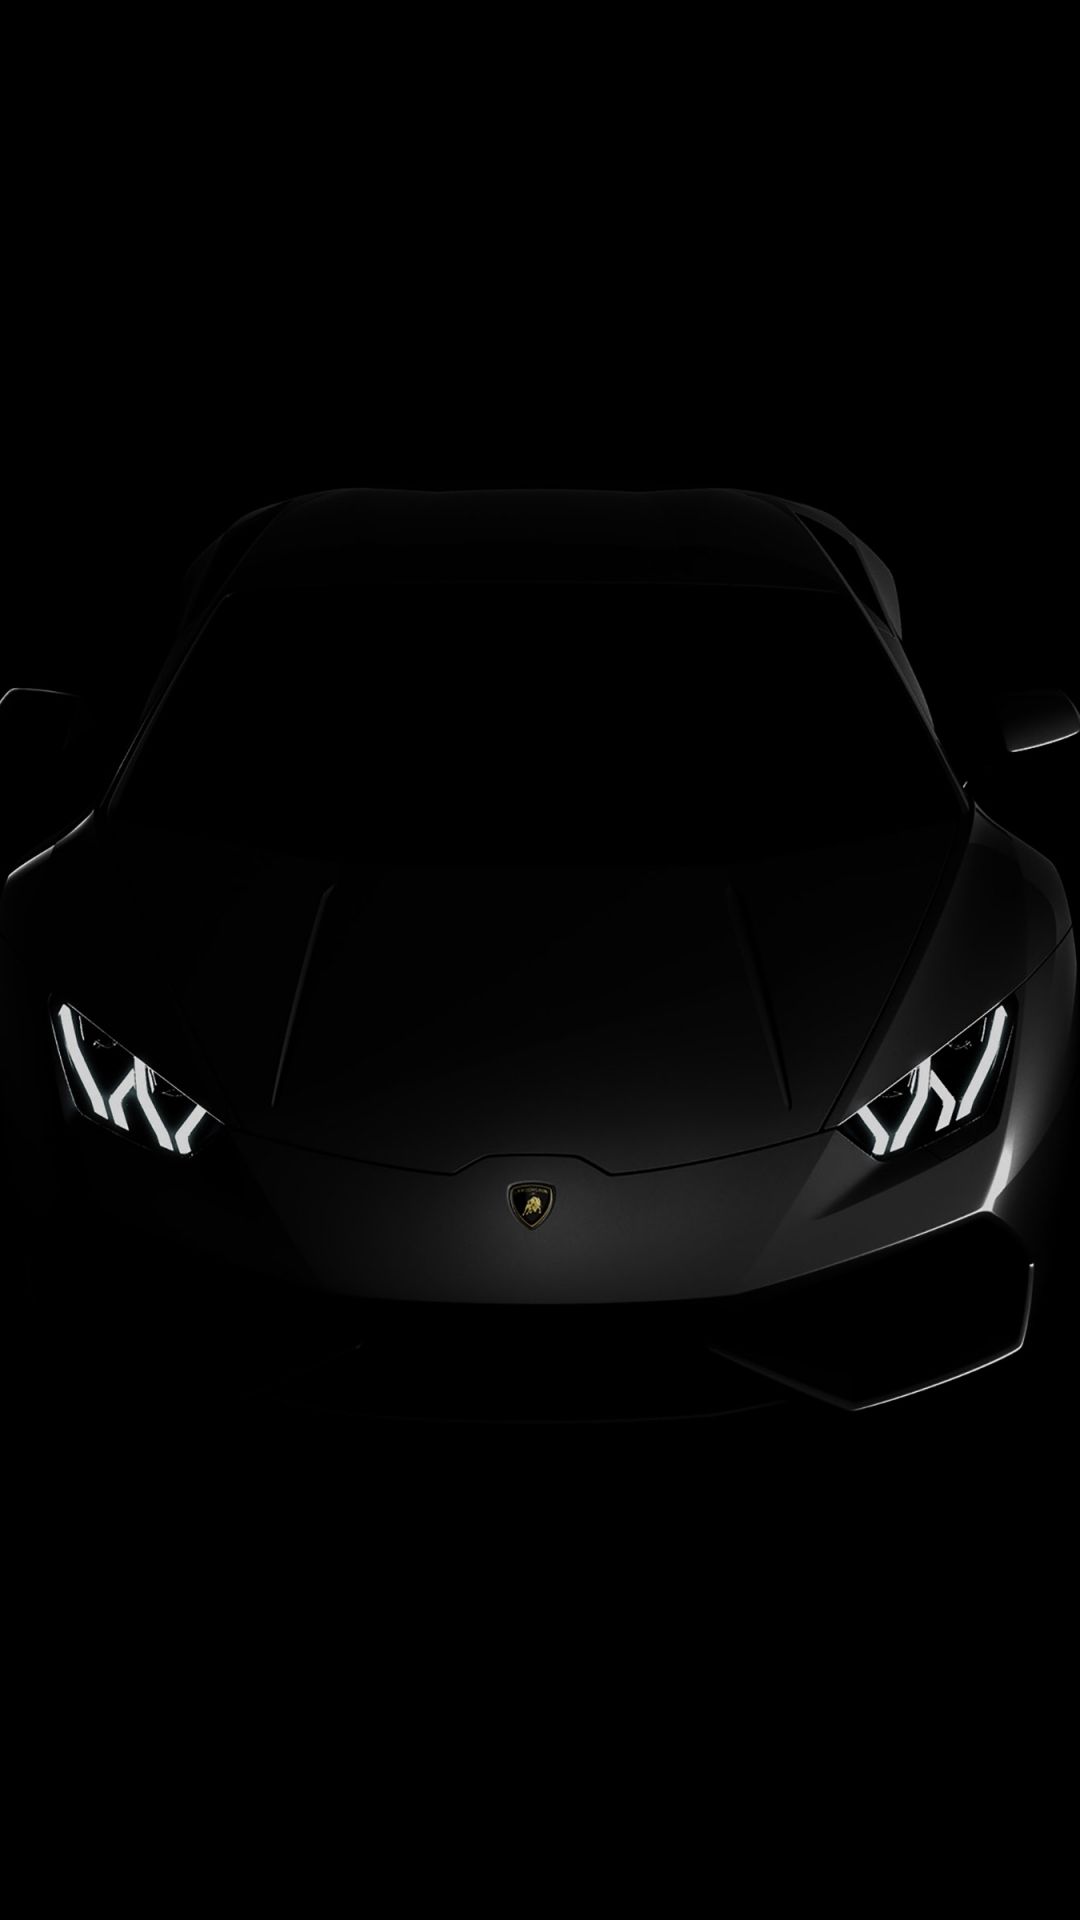 Free download Lamborghini huracan lp black dark 4k wallpaper View HD [3840x2400] for your Desktop, Mobile & Tablet. Explore 4K Black WallpaperK Seahawks Wallpaper, Space Wallpaper 4K, 4K